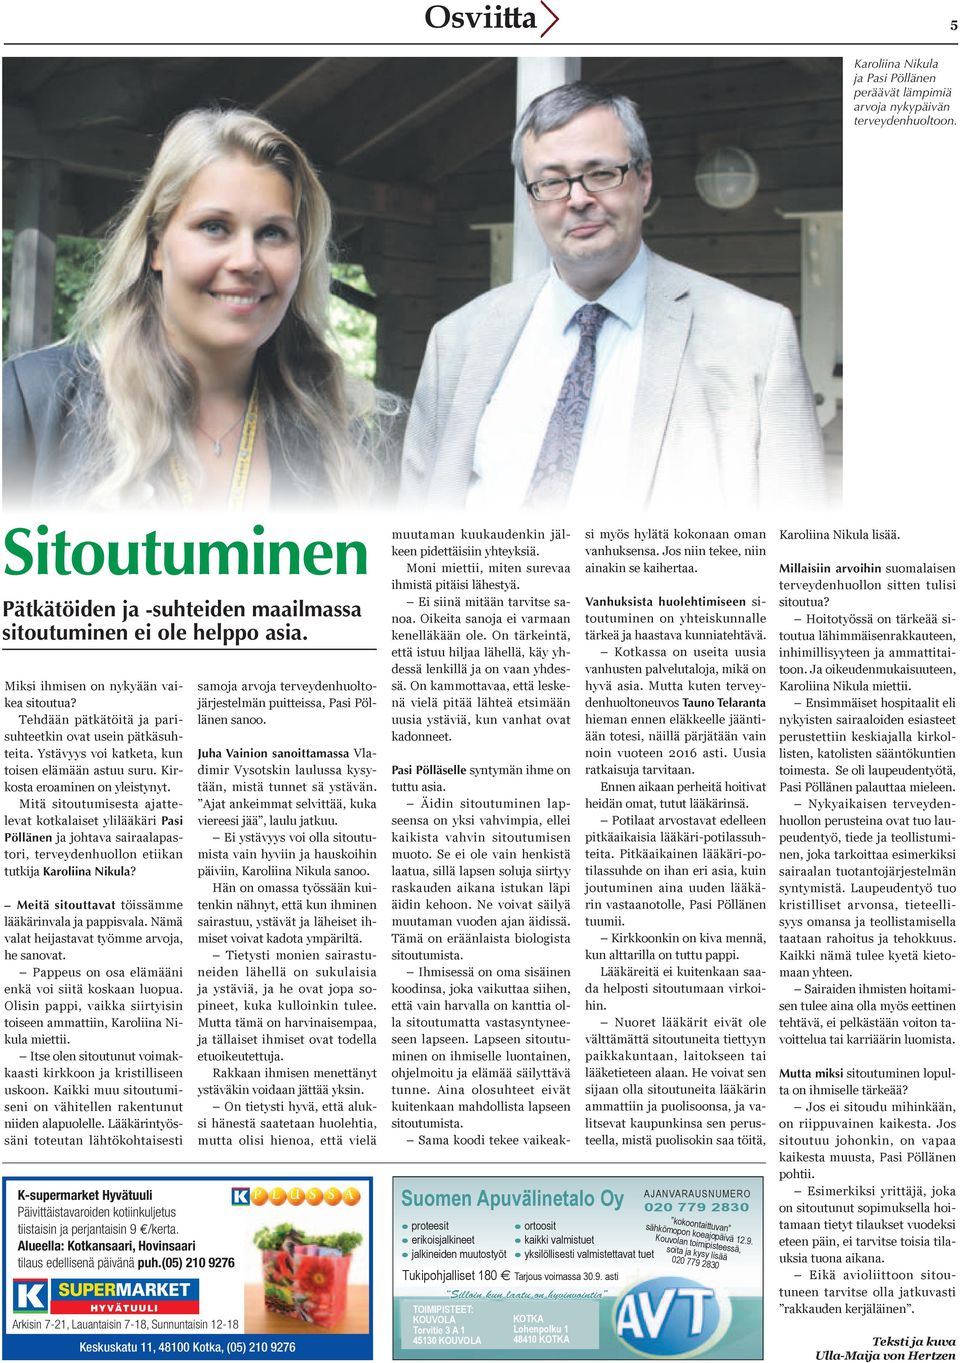 Mitä sitoutumisesta ajattelevat kotkalaiset ylilääkäri Pasi Pöllänen ja johtava sairaalapastori, terveydenhuollon etiikan tutkija Karoliina Nikula?